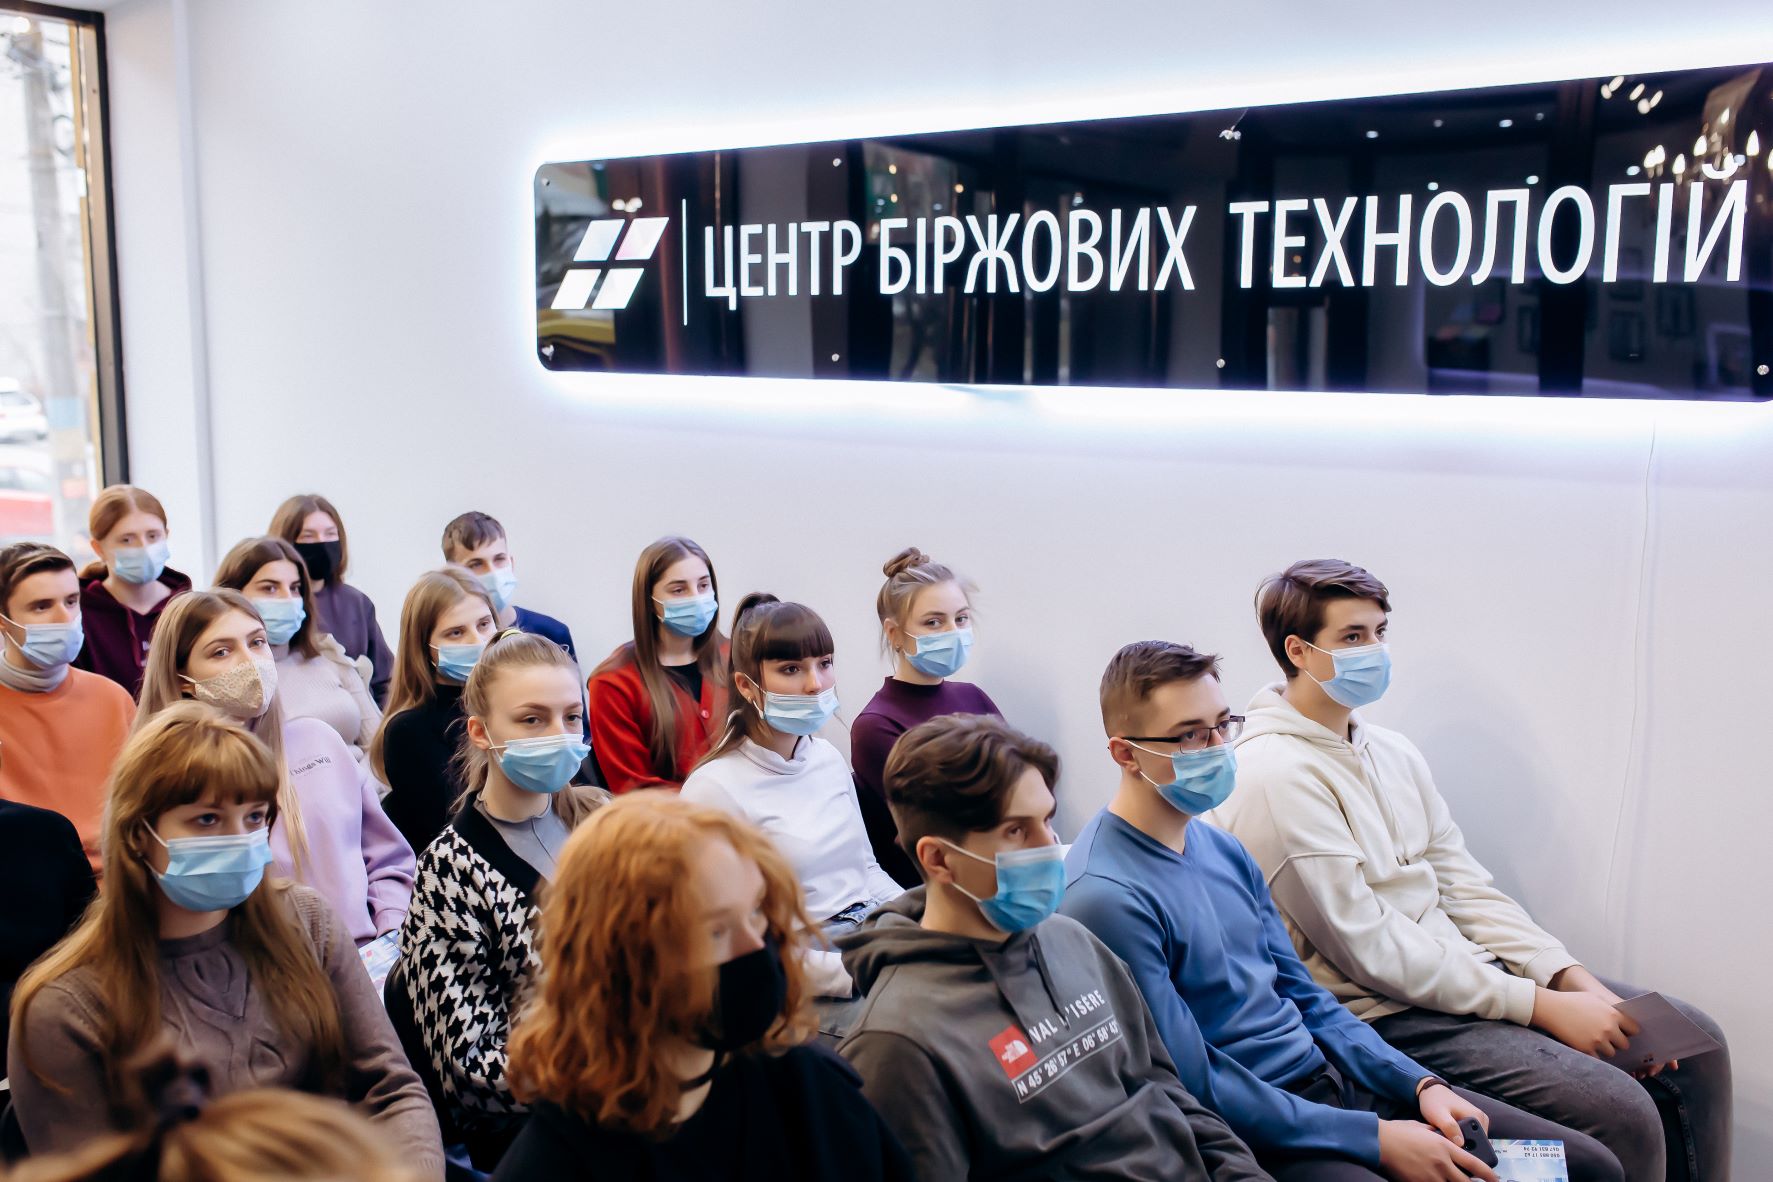 ЦБТ-Черновцы организовал лекционное занятие для студентов колледжа технологий и дизайна - фото 1